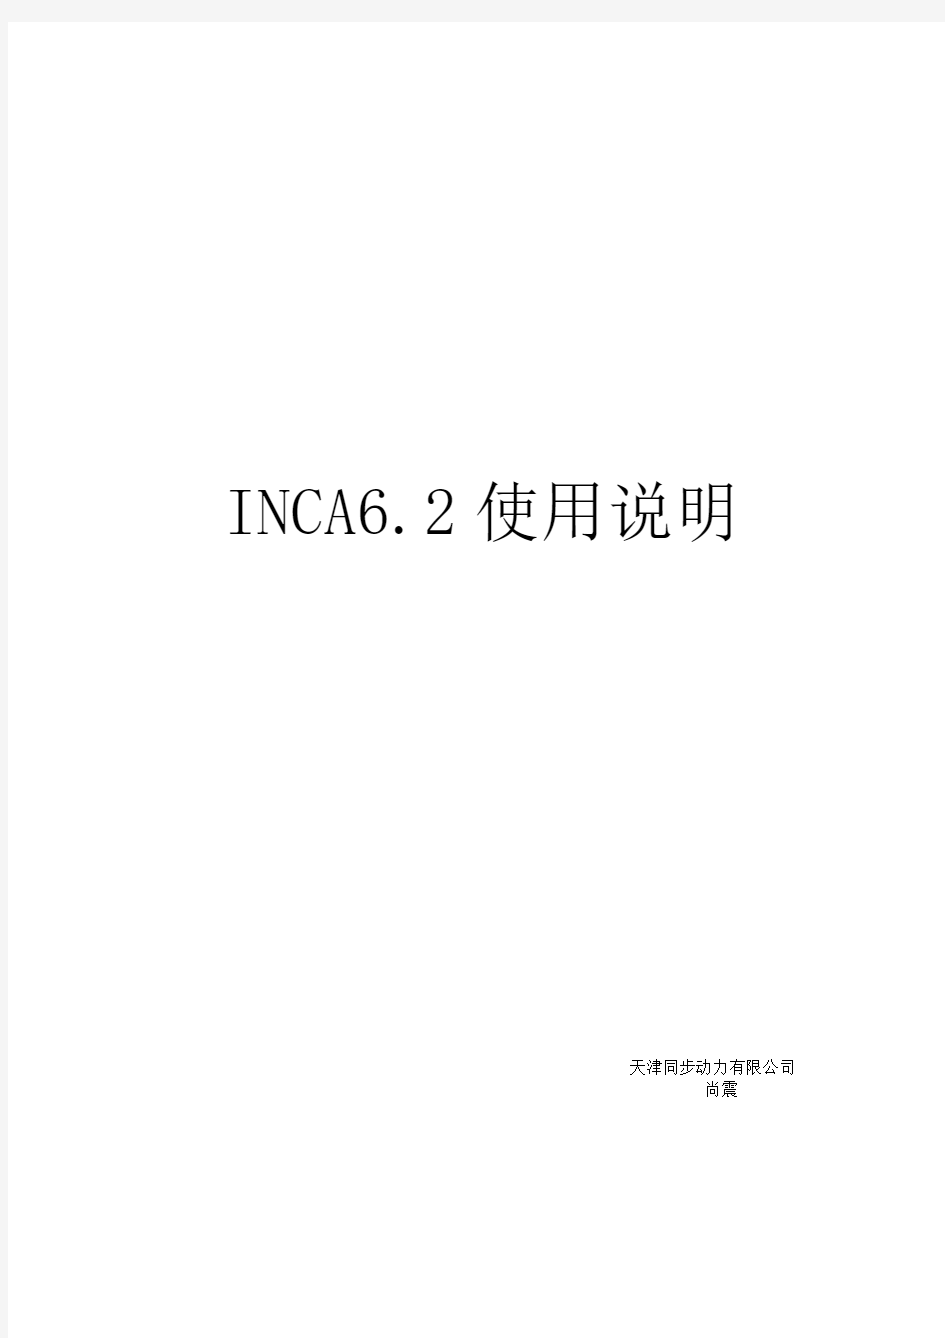 INCA使用说明